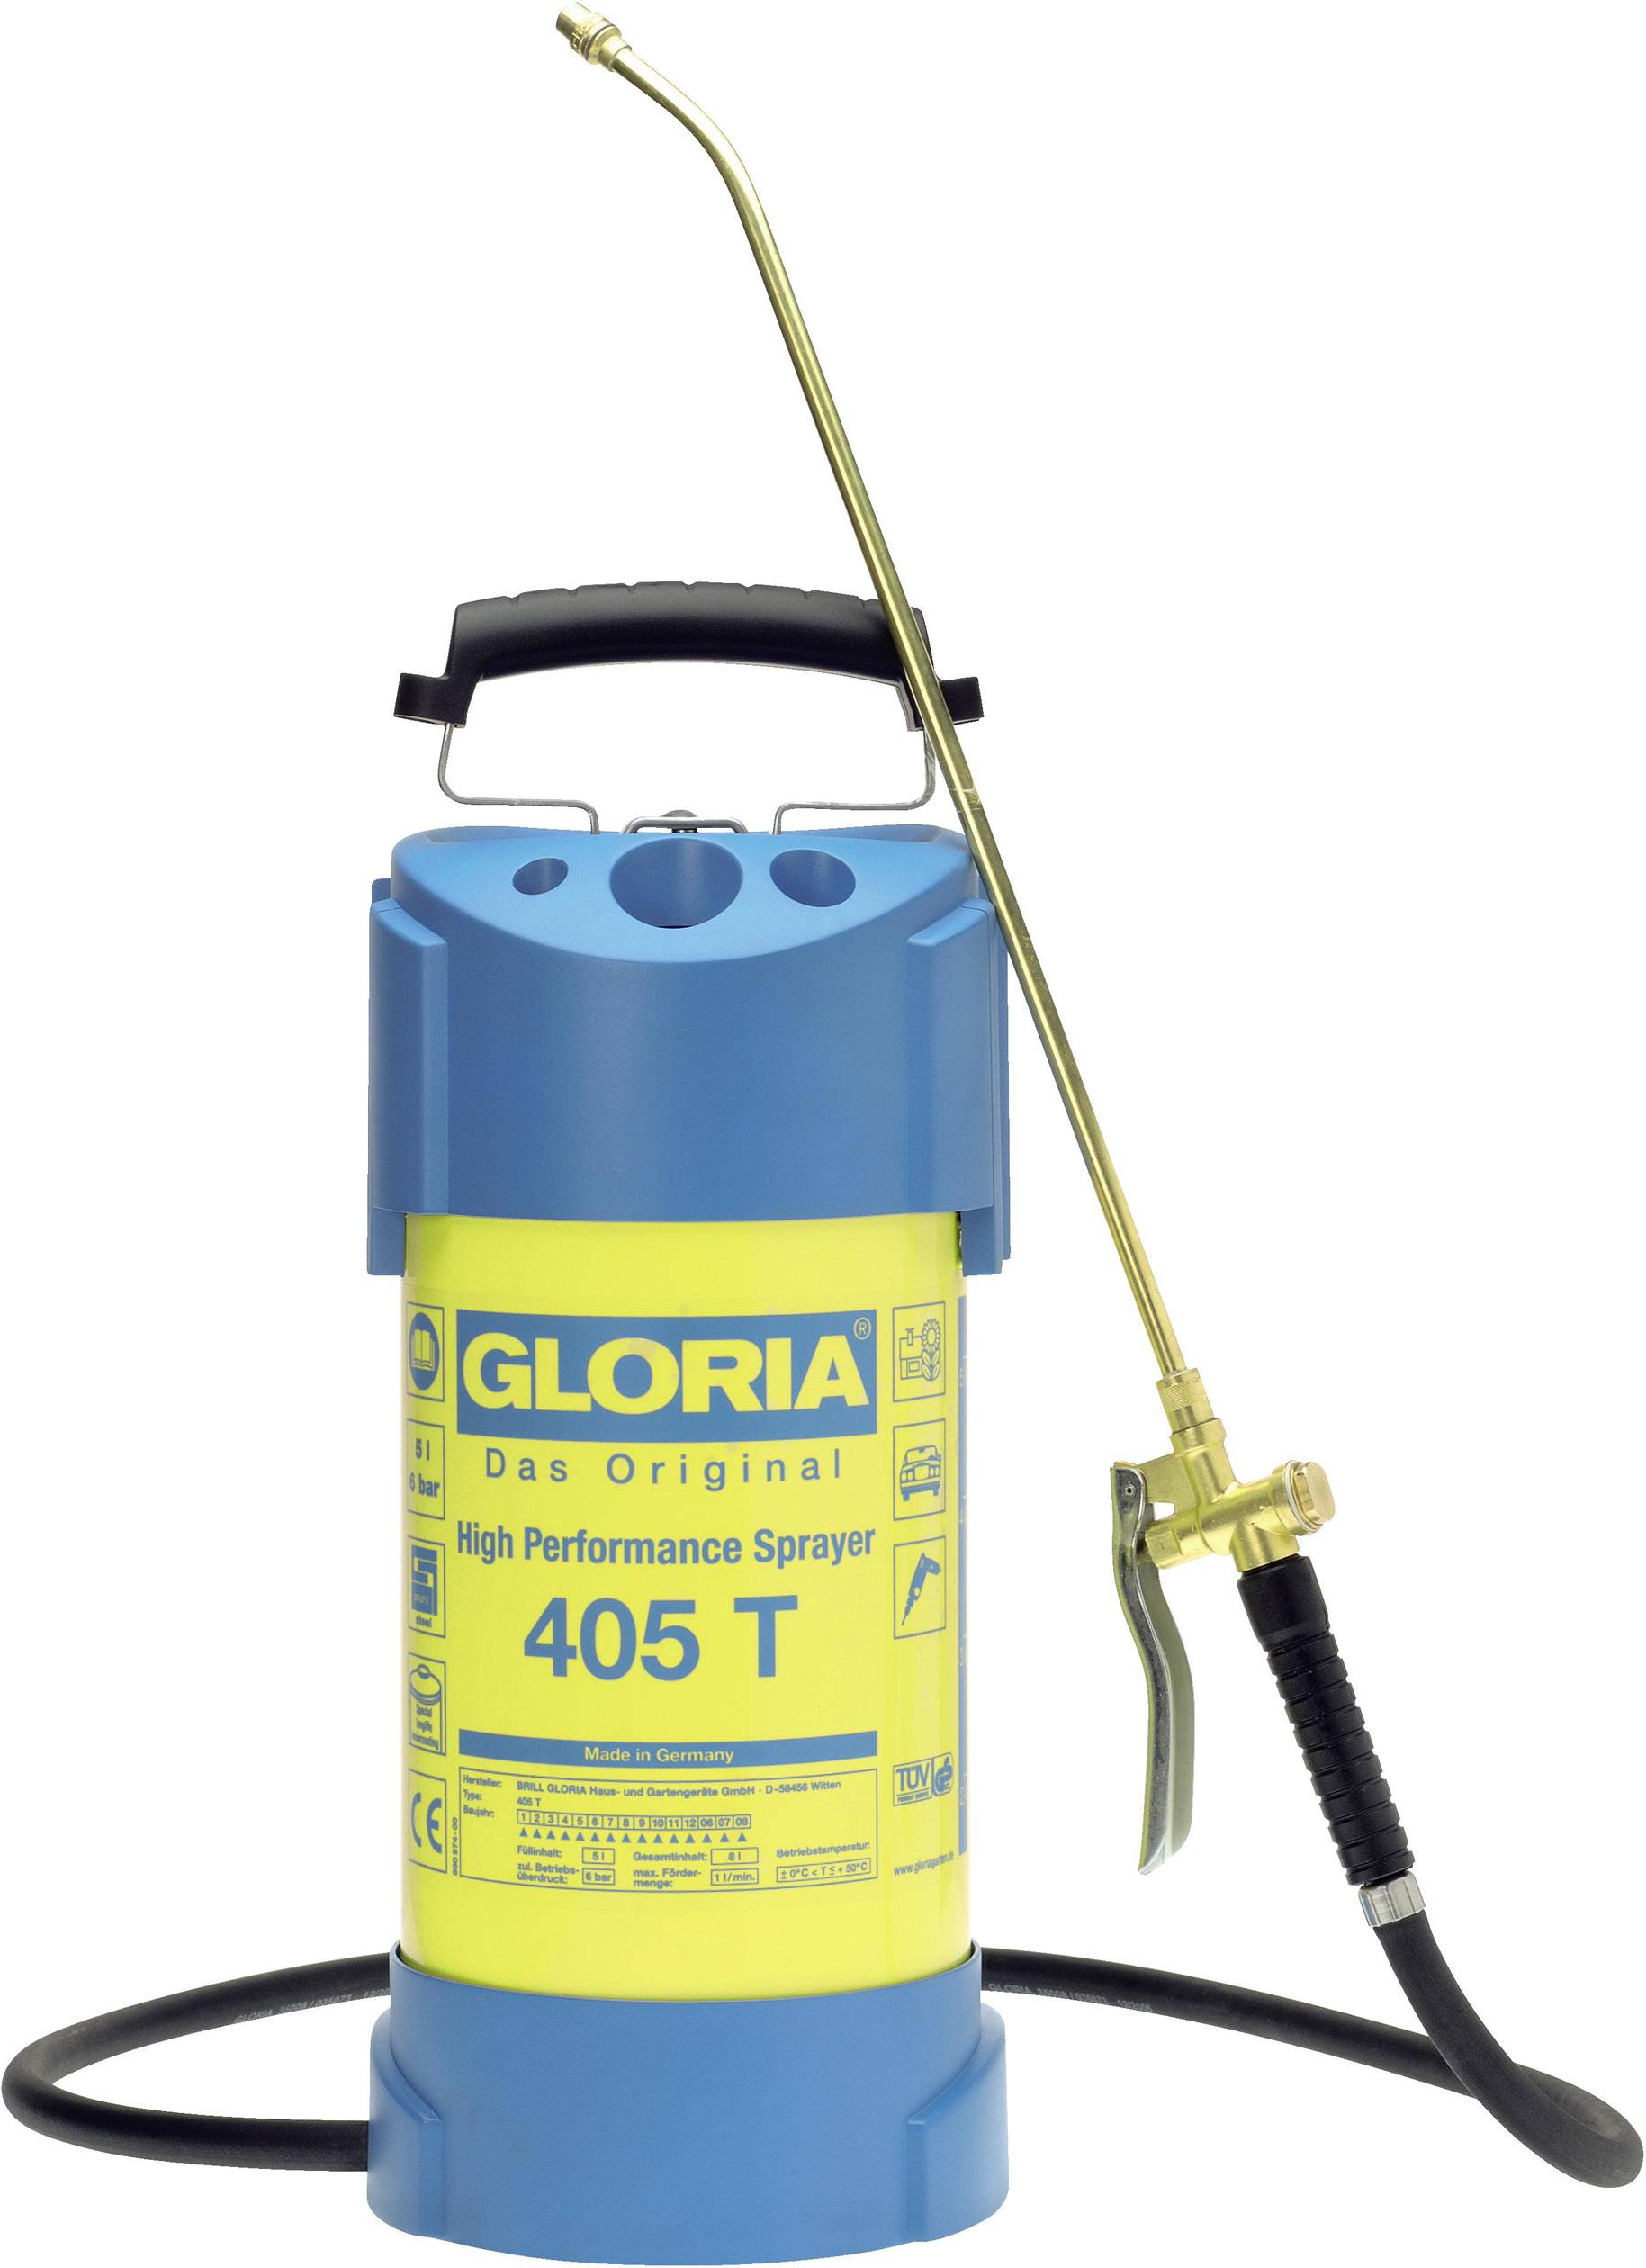 000405.0000 405T Pump pressure sprayer 